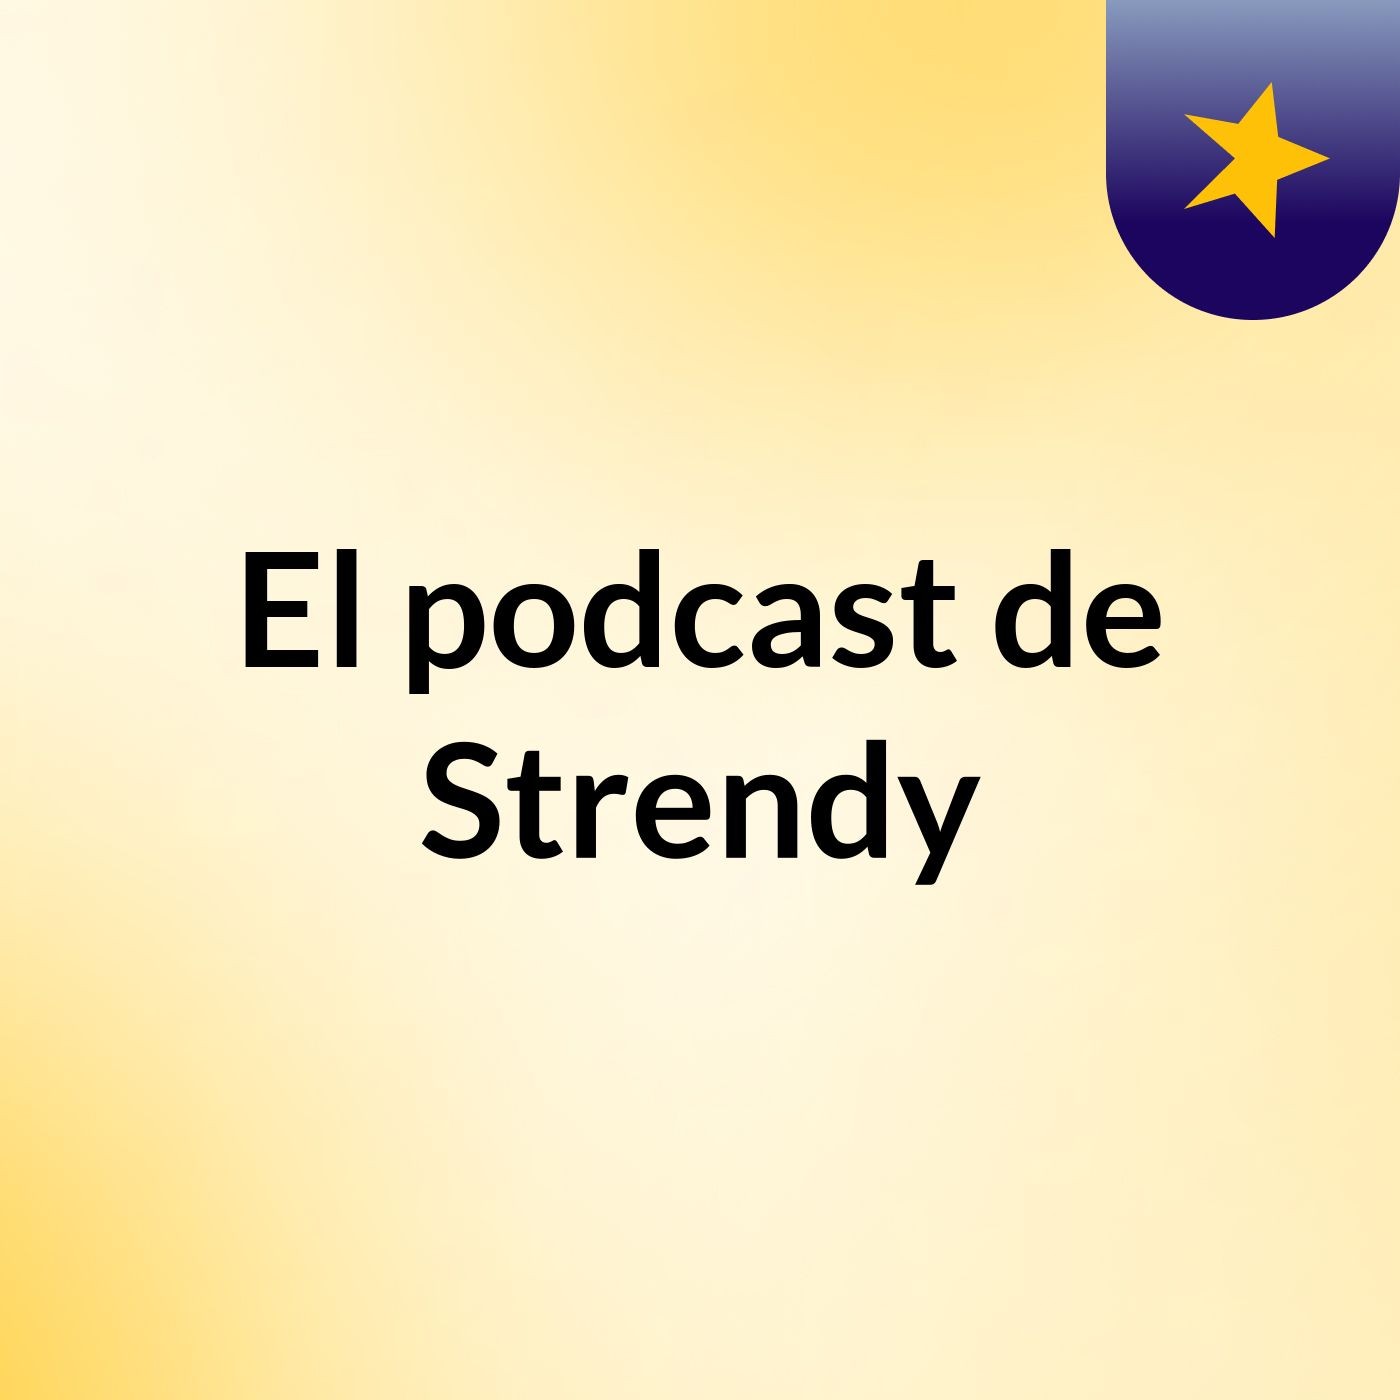 Episodio 3 - El podcast de Strendy